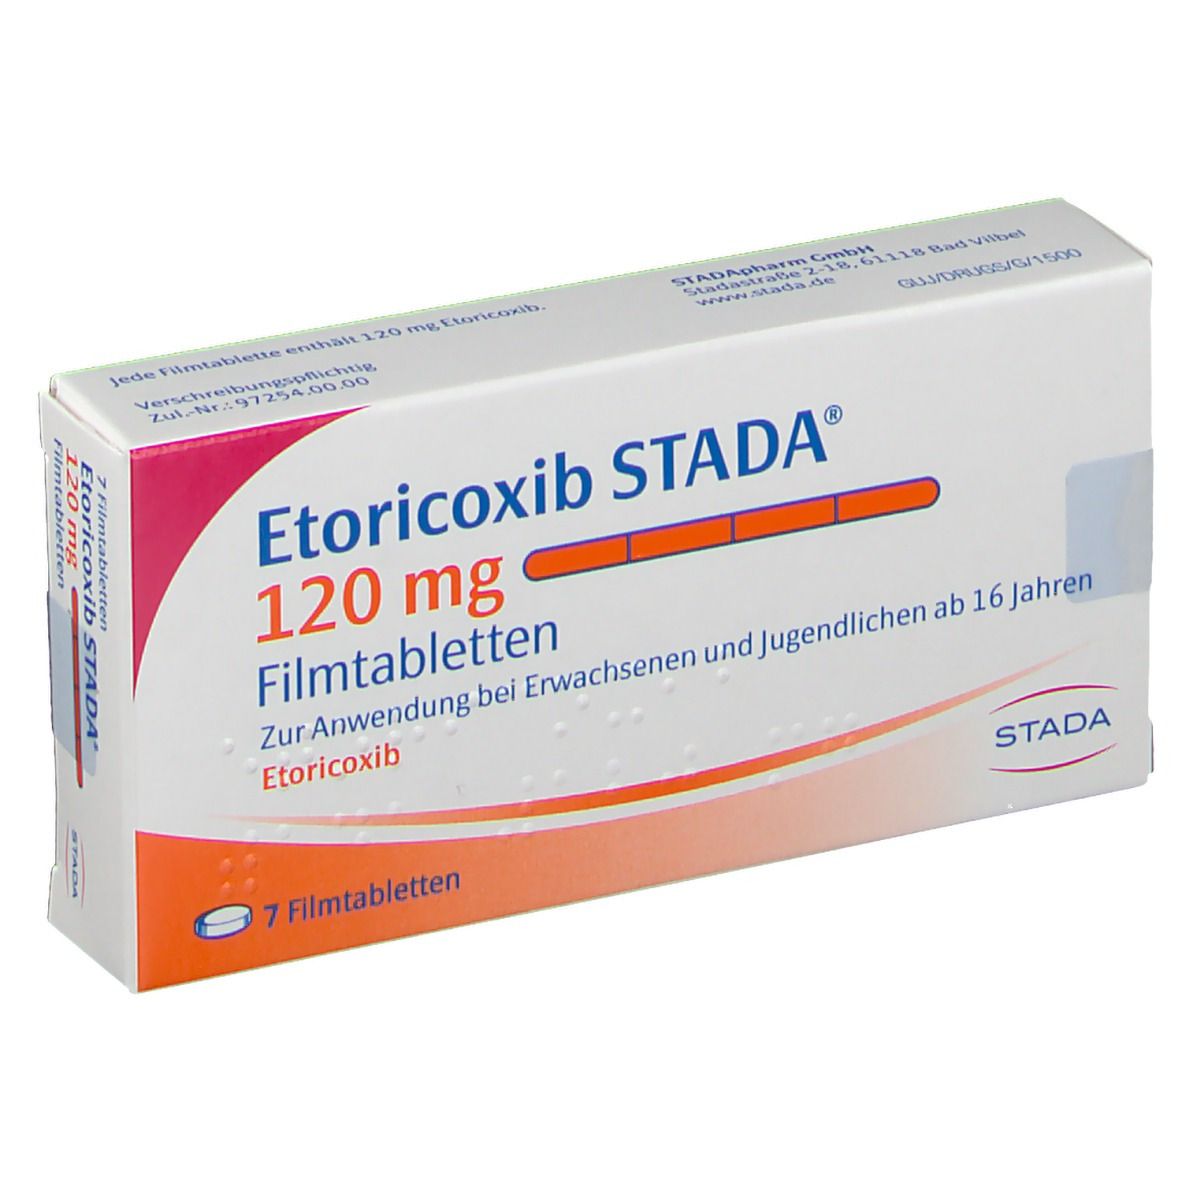 Etoricoxib STADA® 120 mg